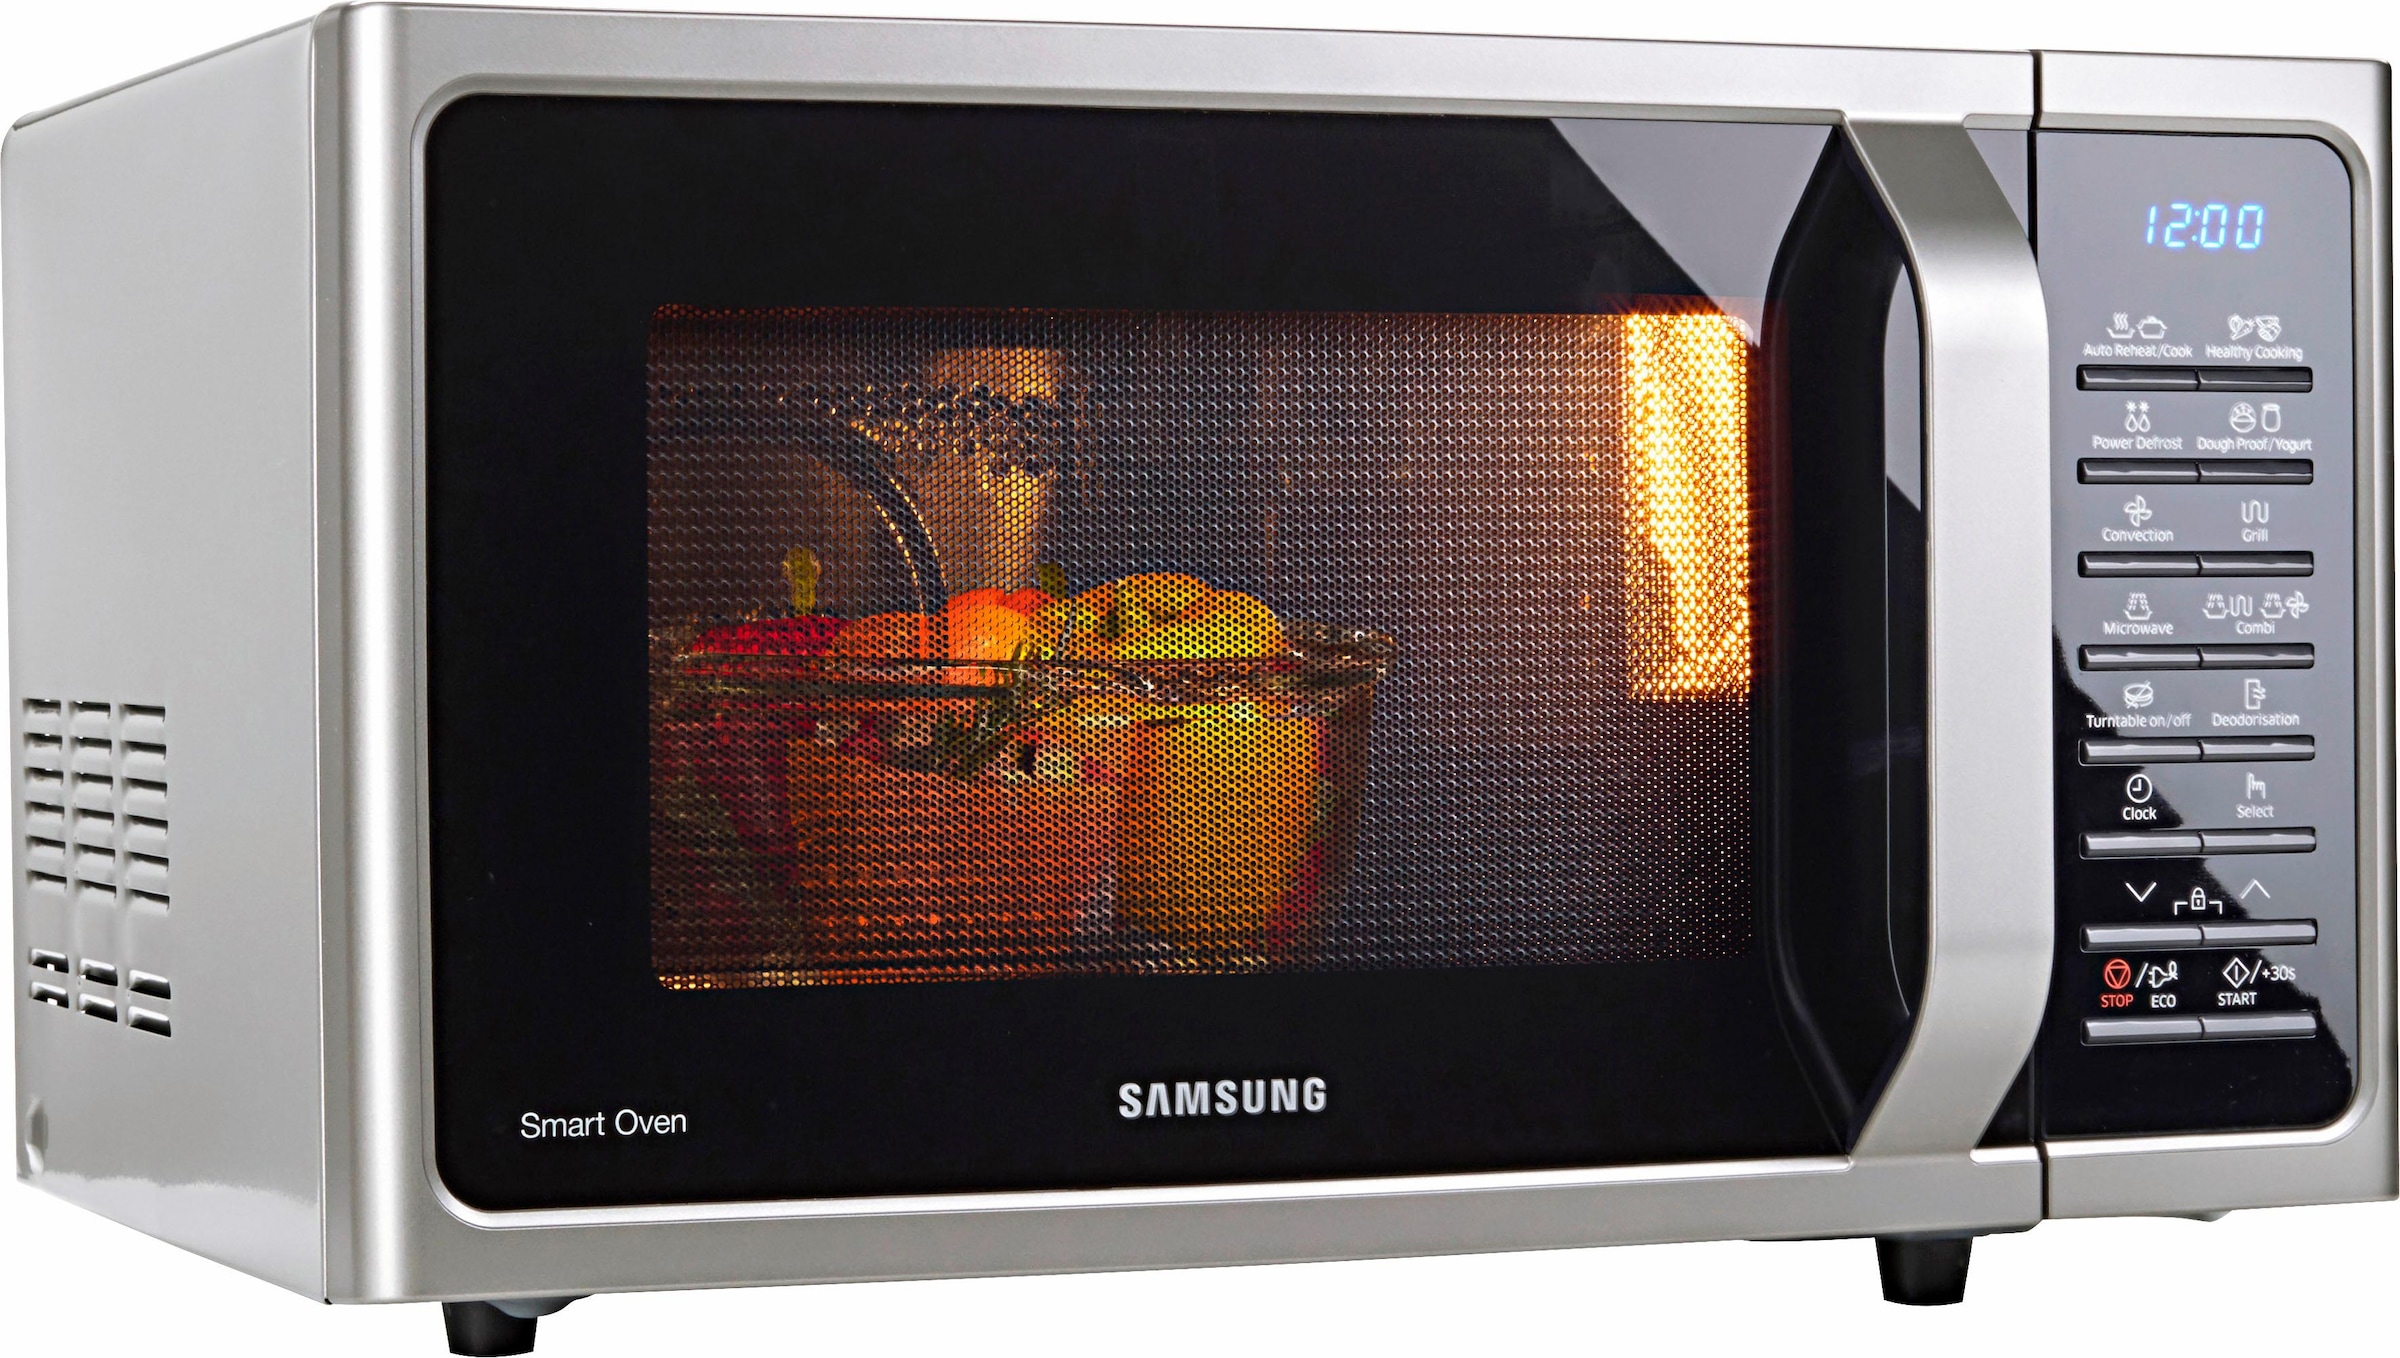 Samsung Mikrowelle »MW5000 MC28H5015CS/EN«, Grill und Heißluft, 900 W